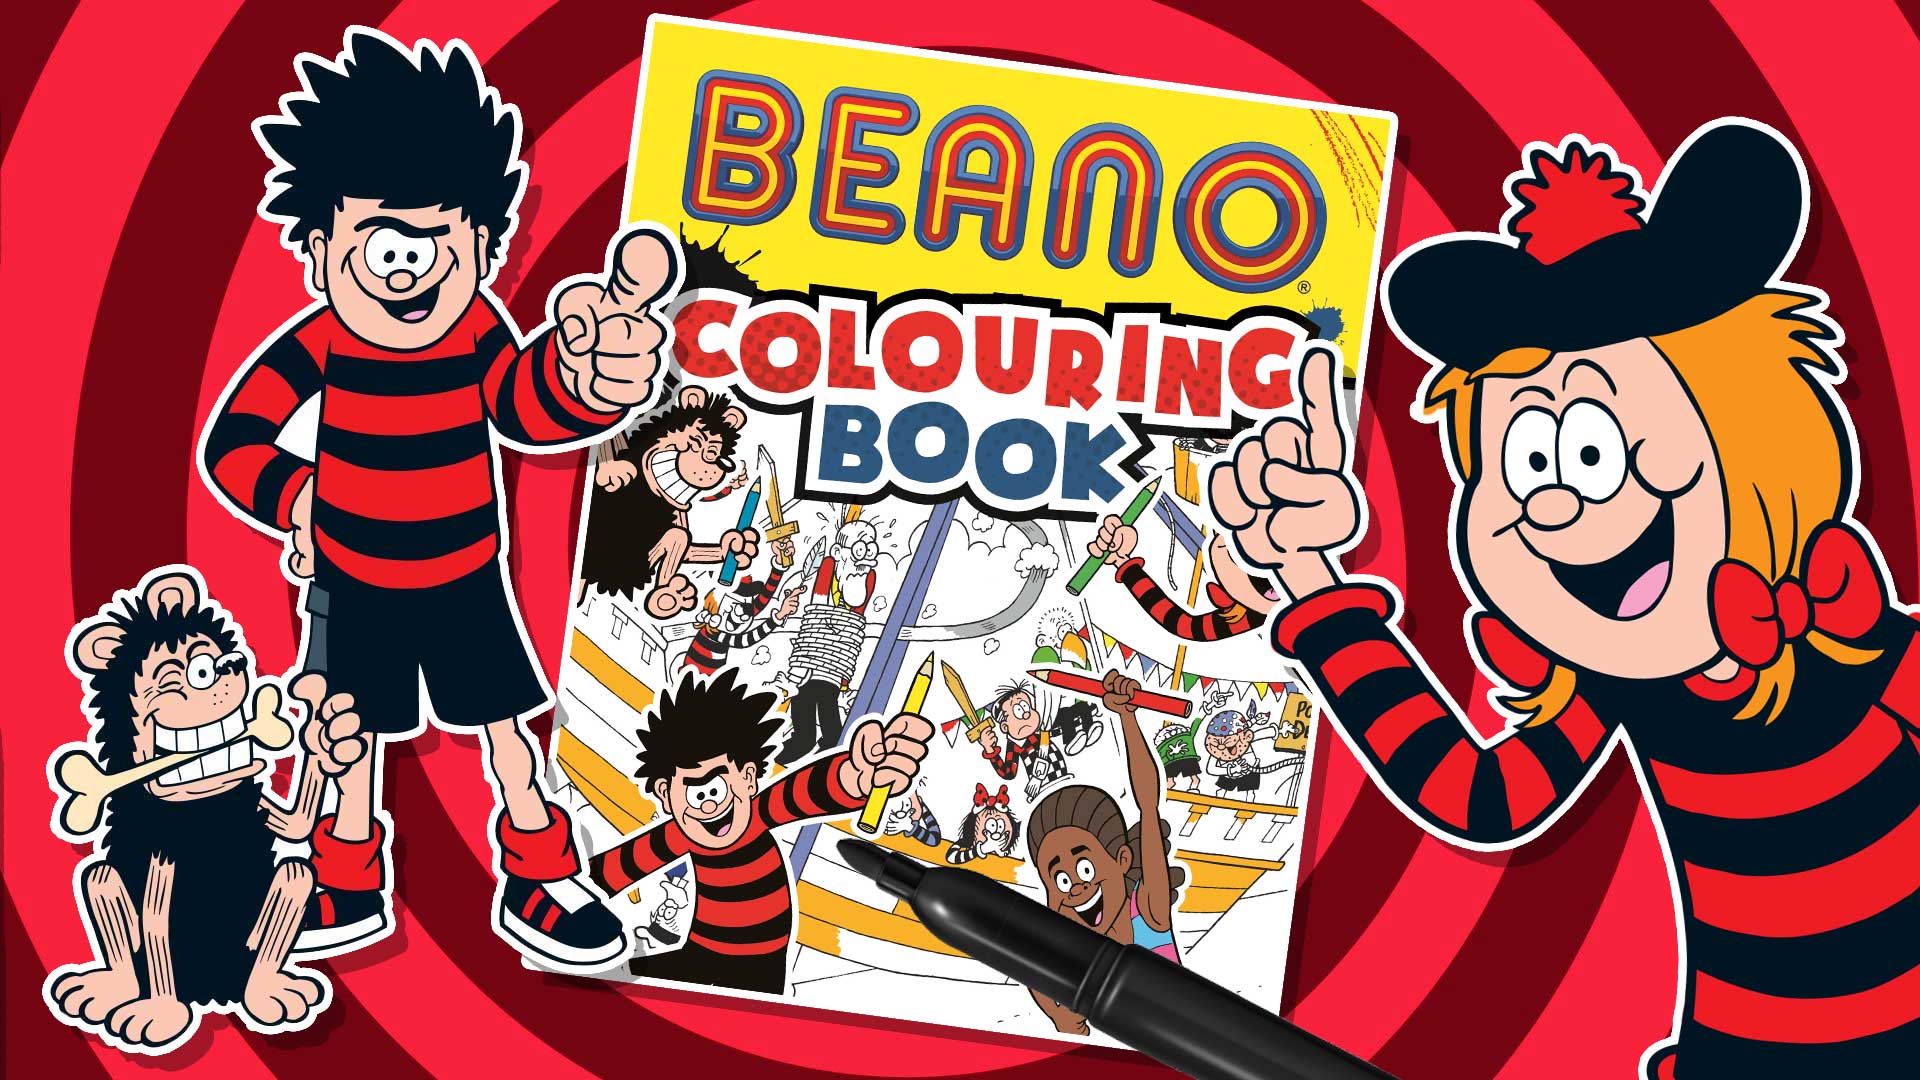 Beano Colouring Book